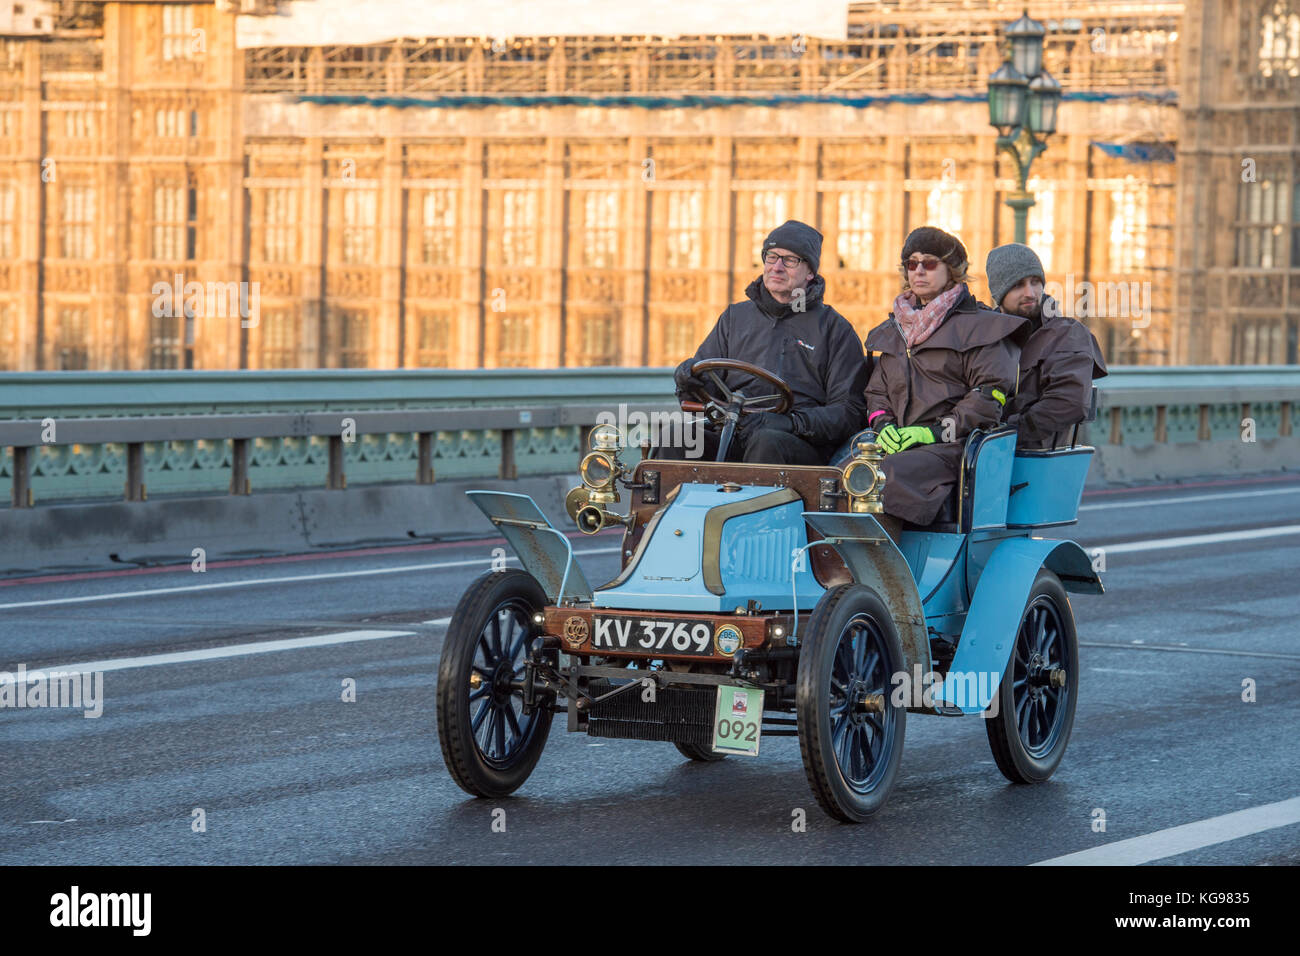 5 novembre 2017. Bonhams de Londres à Brighton, la course automobile de vétéran, la plus longue course automobile au monde, 1901 Darracq sur le pont de Westminster. Banque D'Images